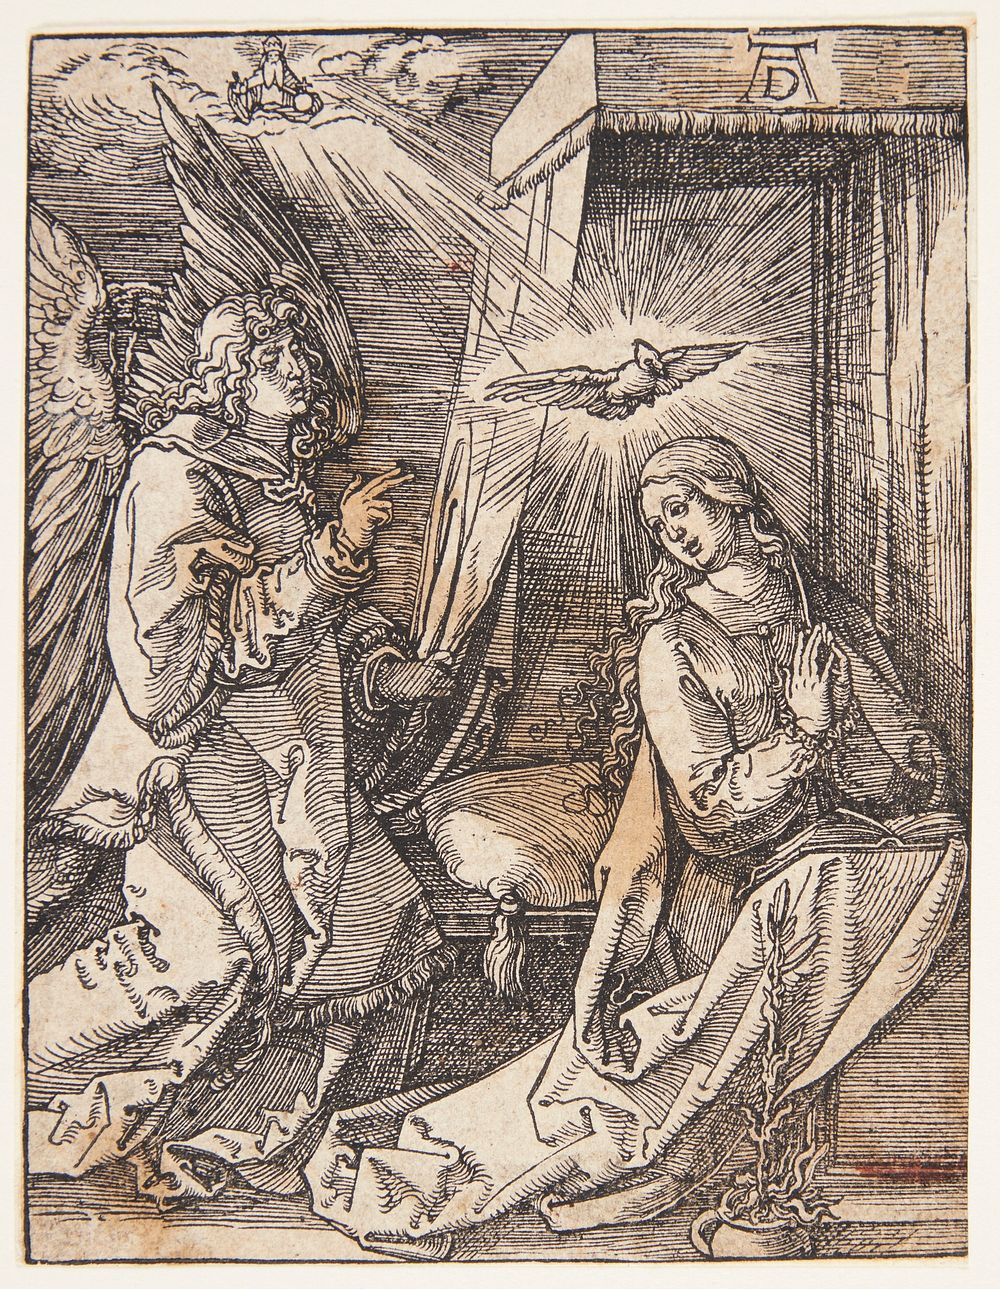 The announcement by Albrecht Dürer